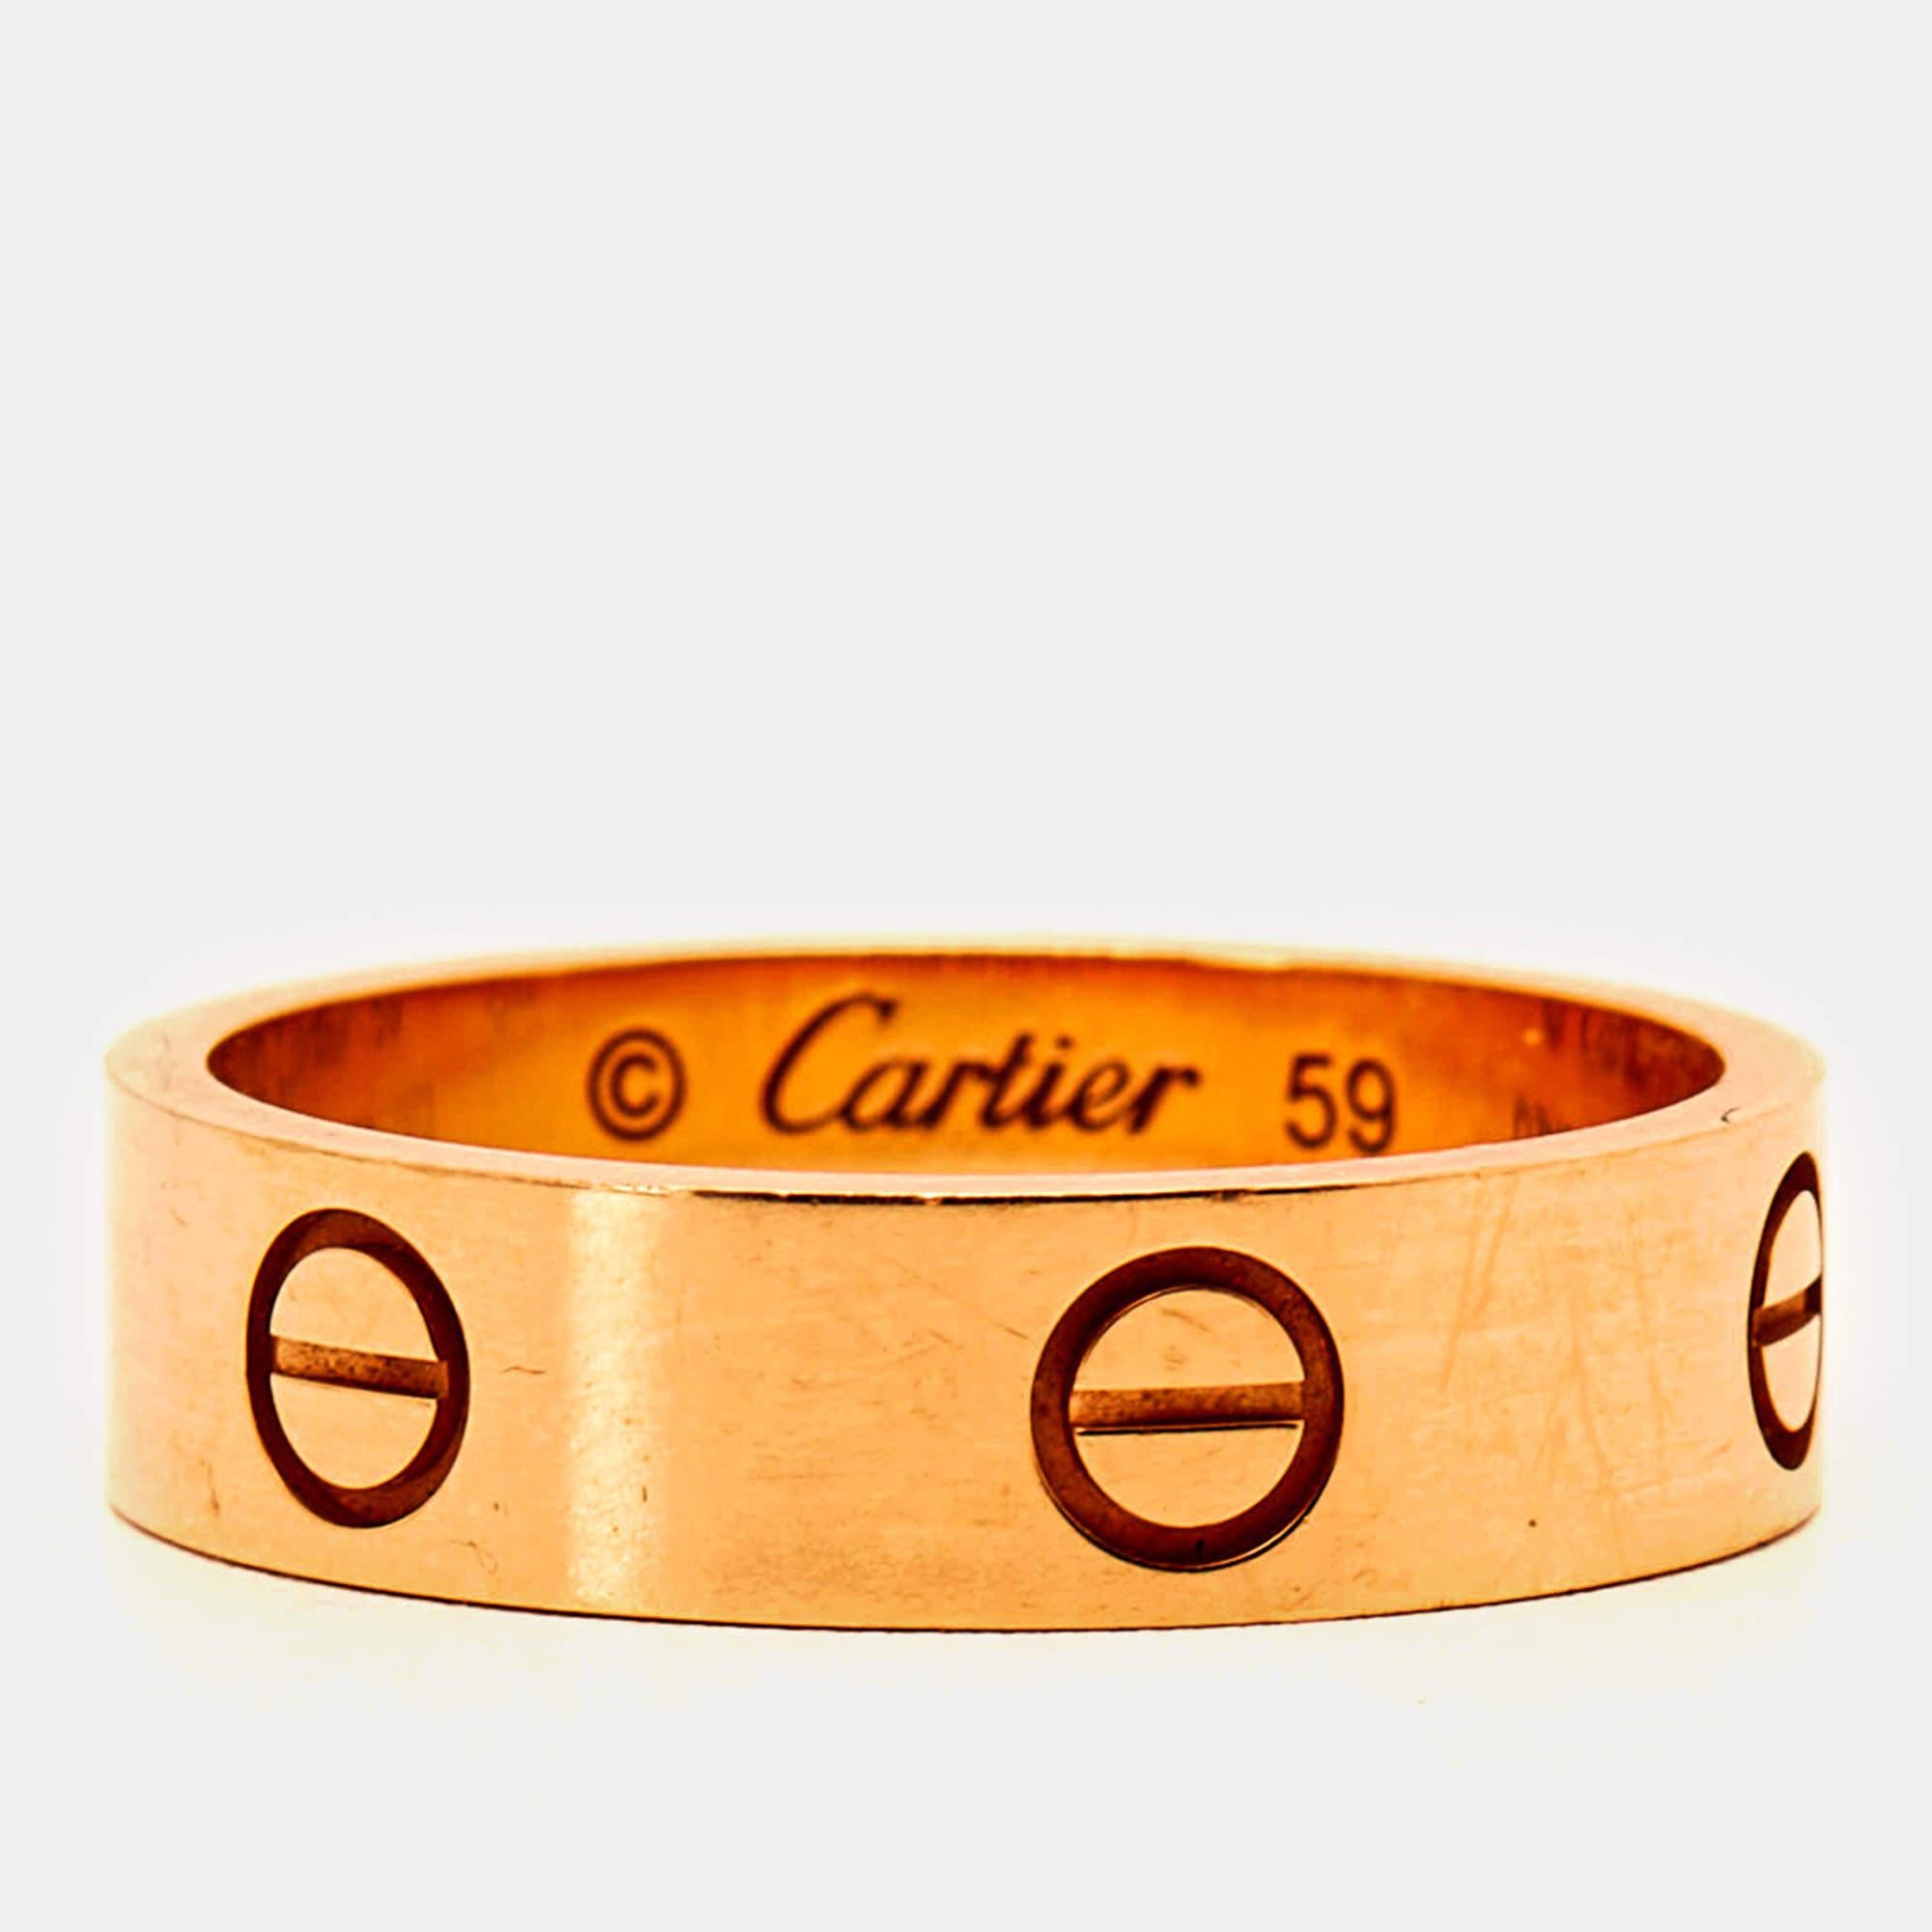 Der Ring von Cartier strahlt mit seinen ikonischen Schraubenmotiven, die ewige Liebe symbolisieren, zeitlose Eleganz aus. Dieses luxuriöse Schmuckstück aus glänzendem 18-karätigem Roségold vereint Raffinesse und Modernität und ist ein Symbol für